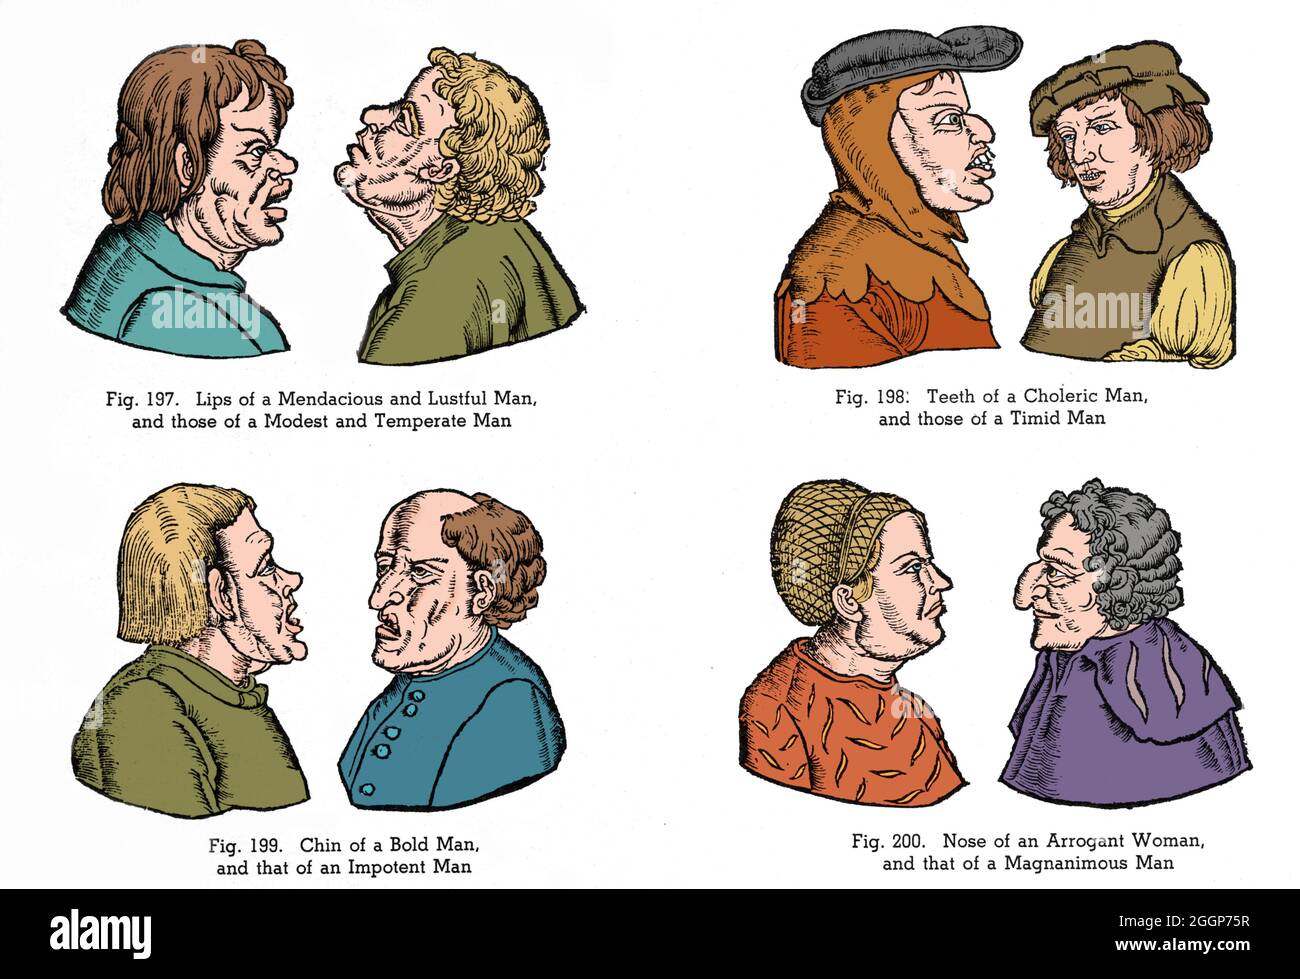 Illustrazioni di stereotipi medievali di personalità basate su caratteristiche facciali. La pseudoscienza della fisiognomia è la valutazione del carattere o della personalità di una persona dal suo aspetto esterno, specialmente il volto. Colore ottimizzato. Foto Stock